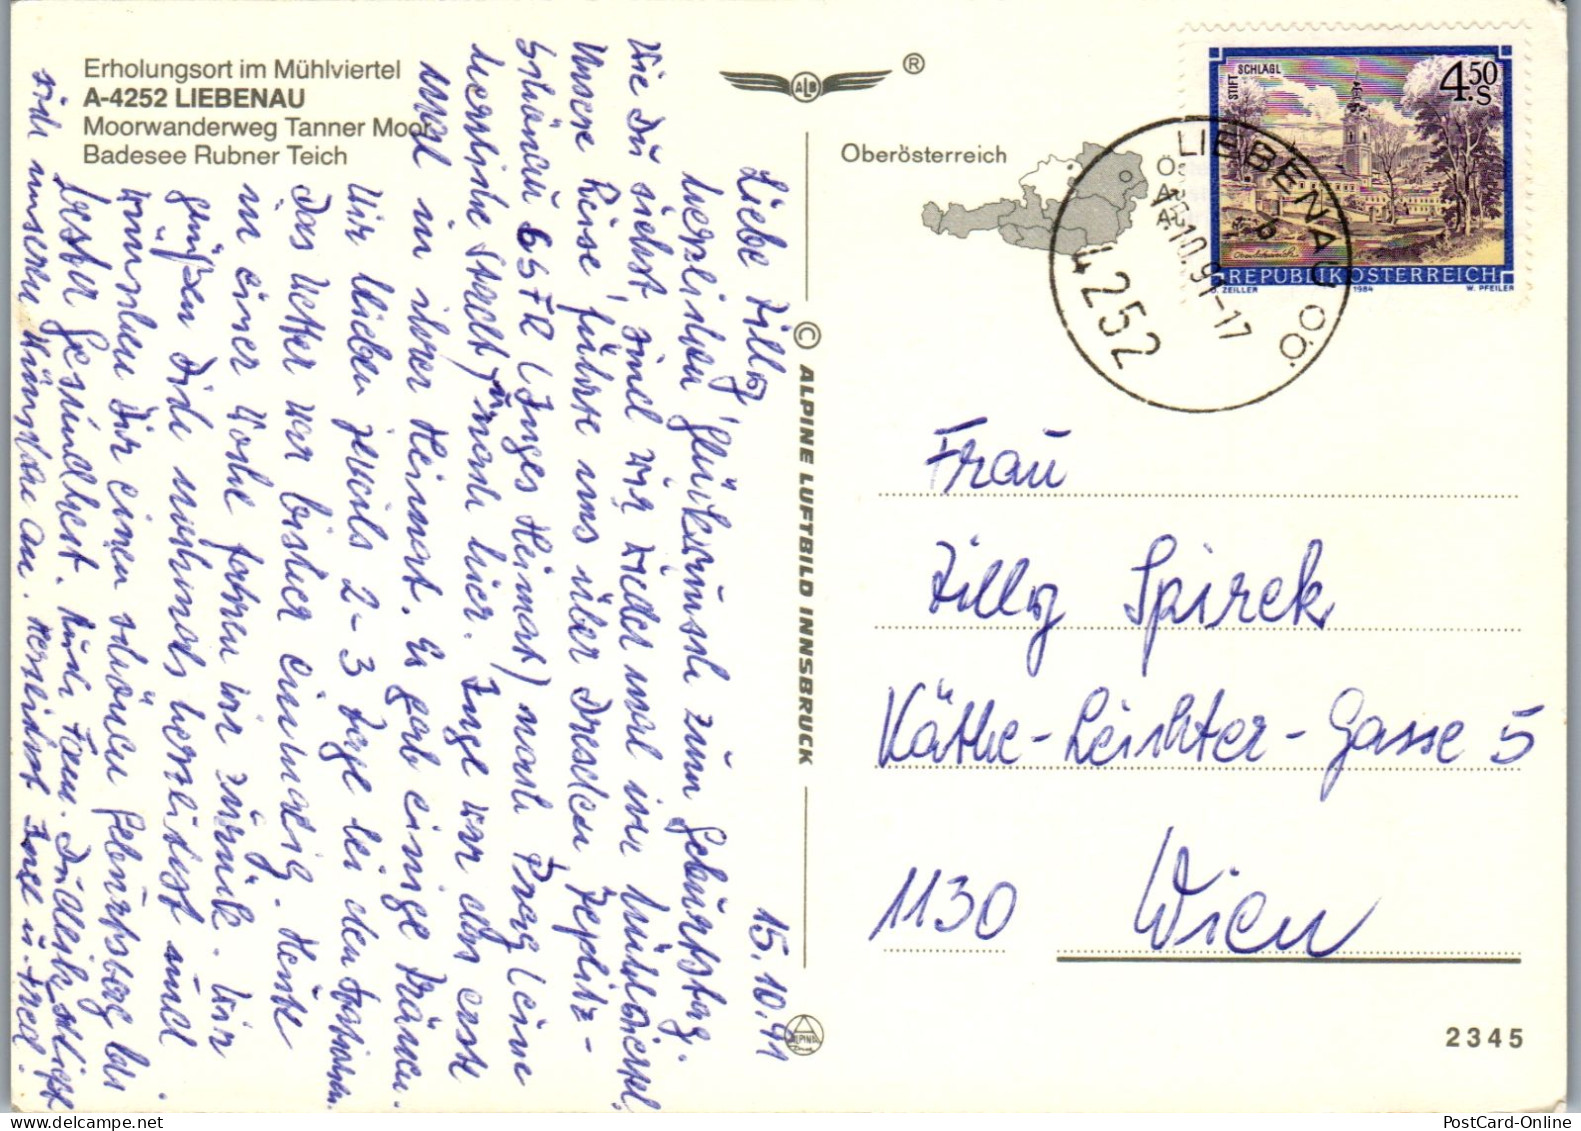 49625 - Oberösterreich - Liebenau , Tanner Moor , Badesee Rubner Teich , Mehrbildkarte - Gelaufen 1991 - Freistadt